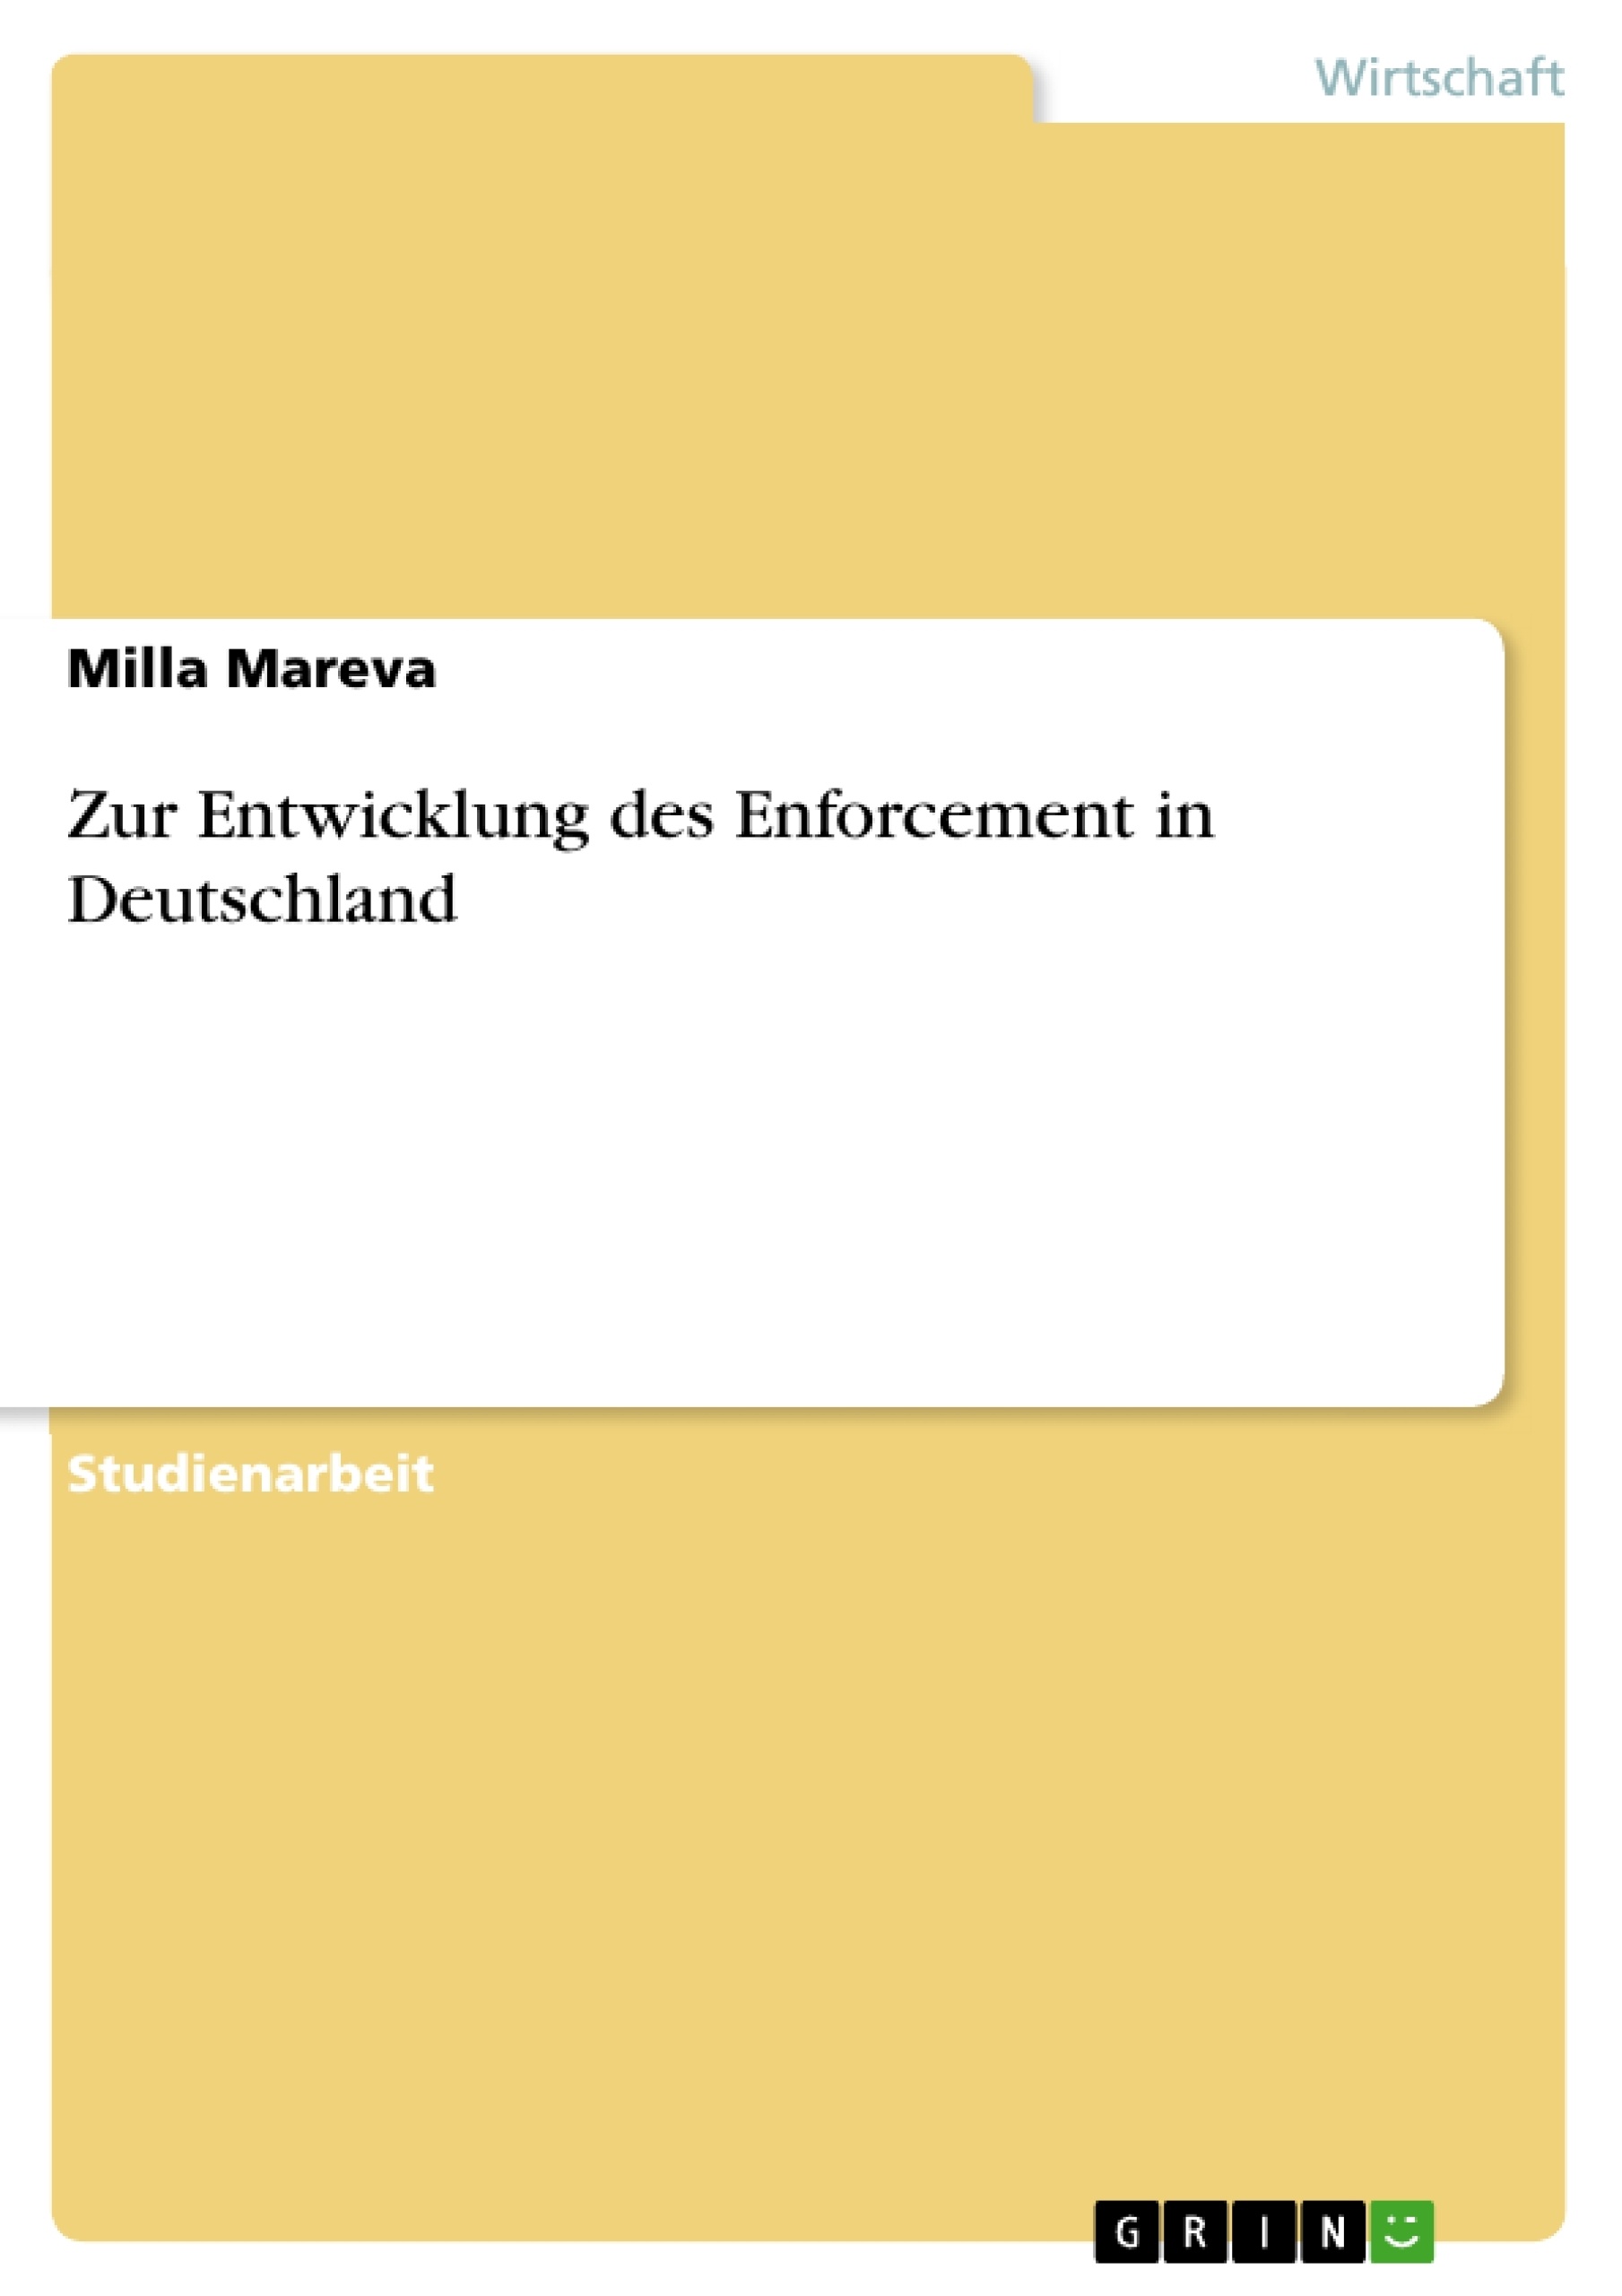 Título: Zur Entwicklung des Enforcement in Deutschland